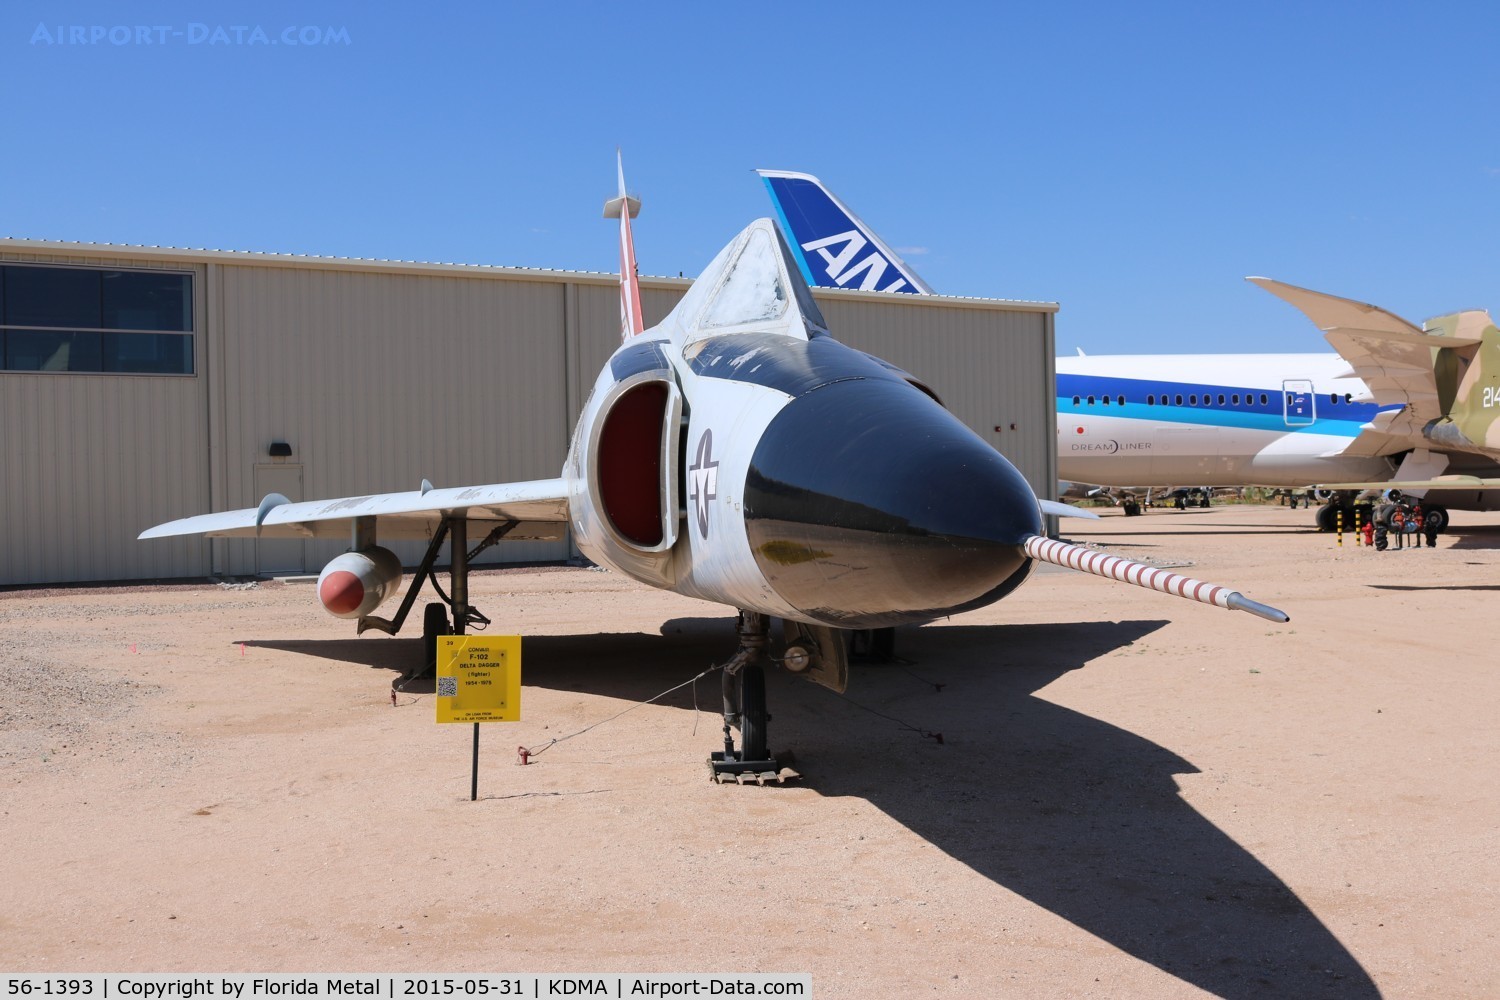 56-1393, 1956 Convair F-102A Delta Dagger C/N 8-10-340, F-102A